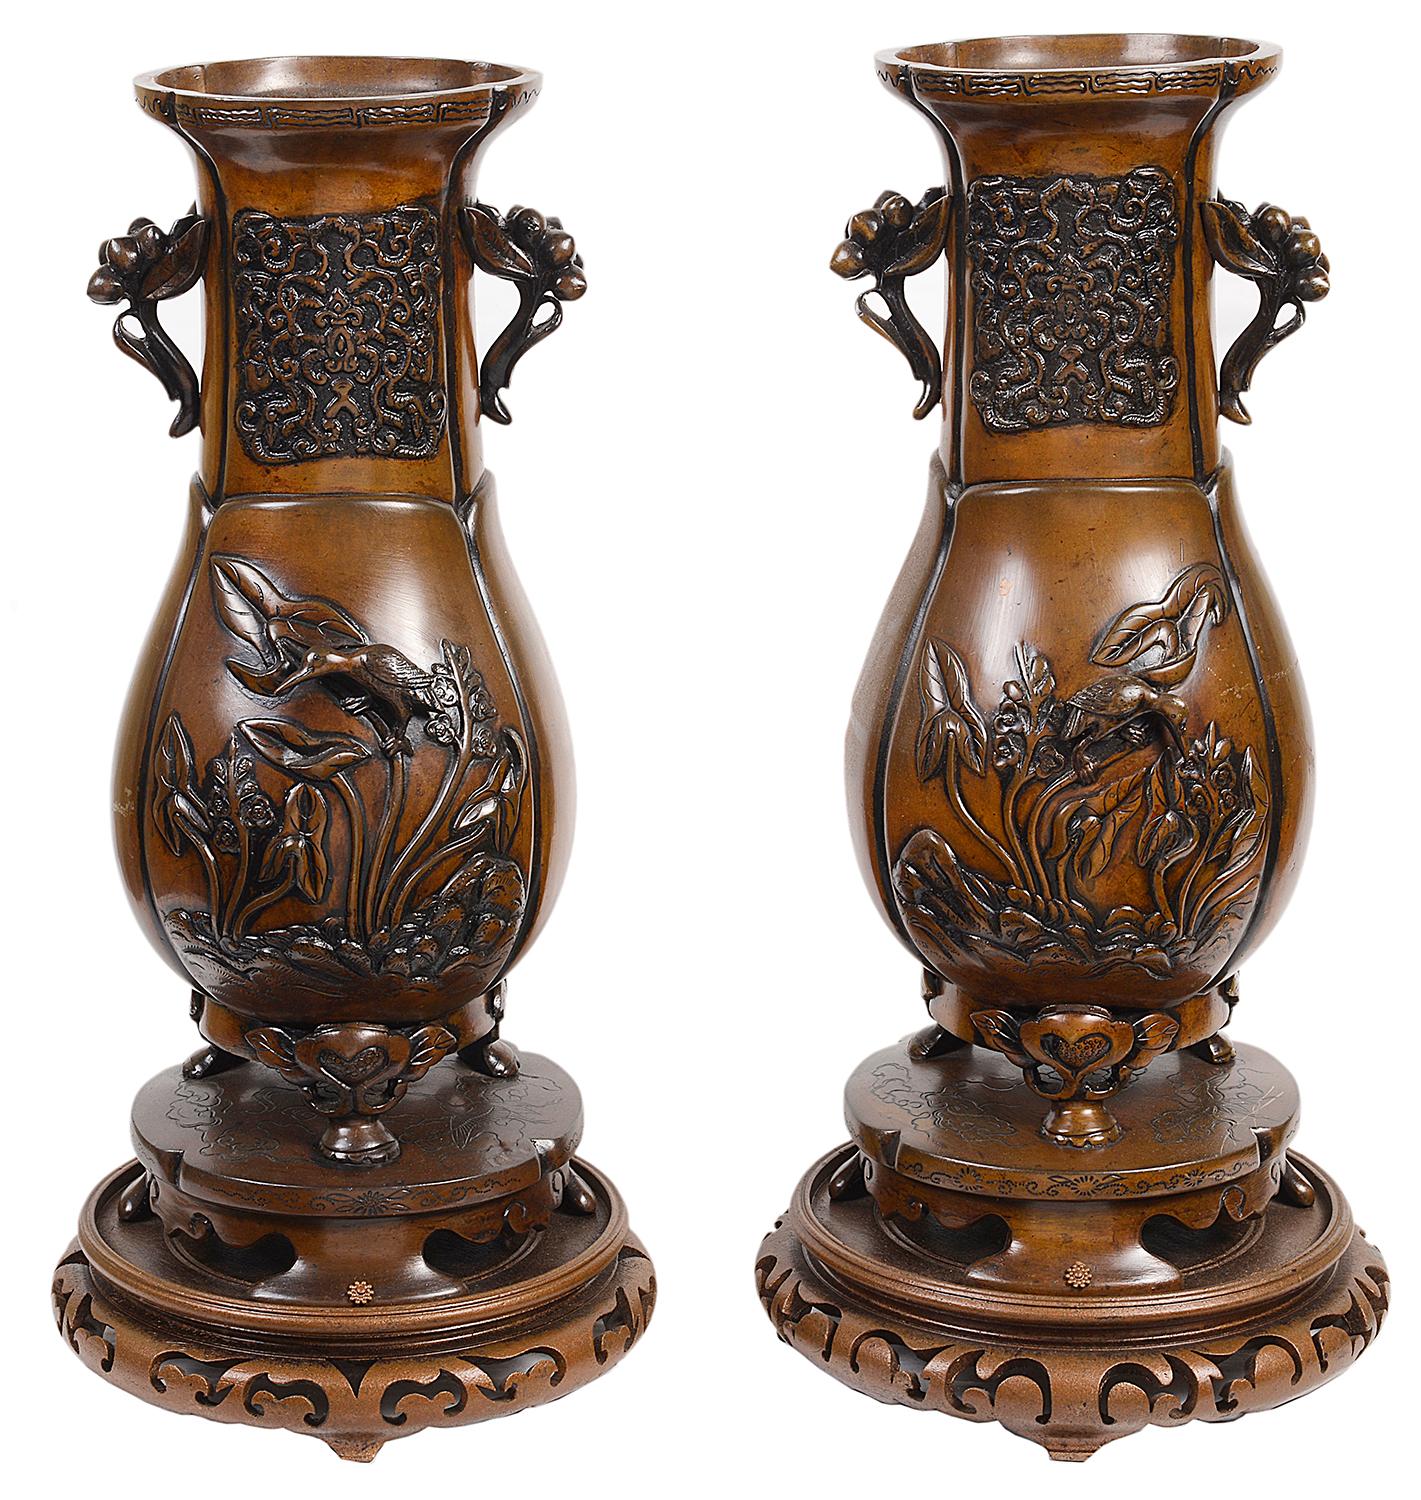 Ein Paar japanischer Bronzevasen guter Qualität aus dem 19. Jahrhundert mit Ständern, jeweils mit erhabenem Blumen- und Vogelrelief, montiert auf Ständern aus Bronze und geschnitztem Holz.